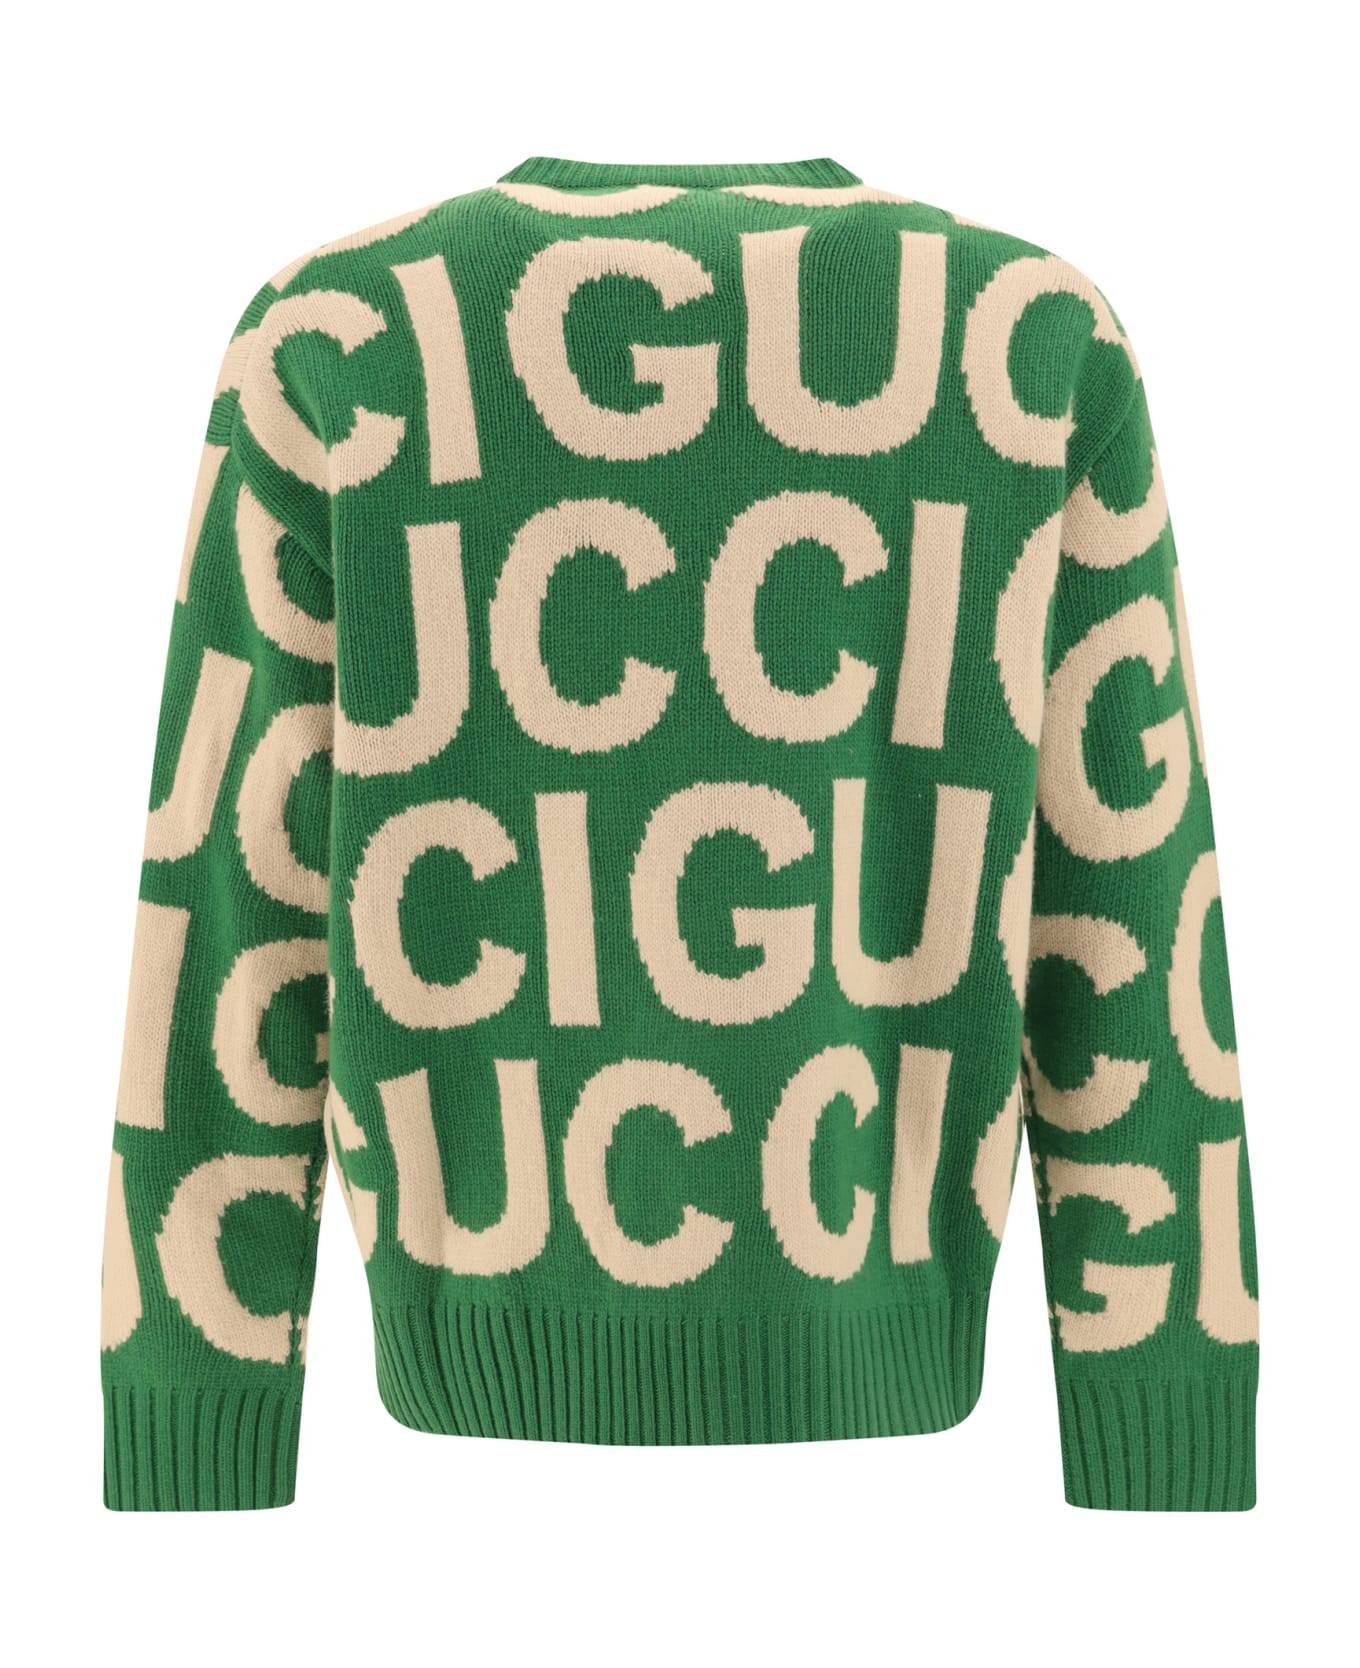 Gucci Sweater - Yard/ivory